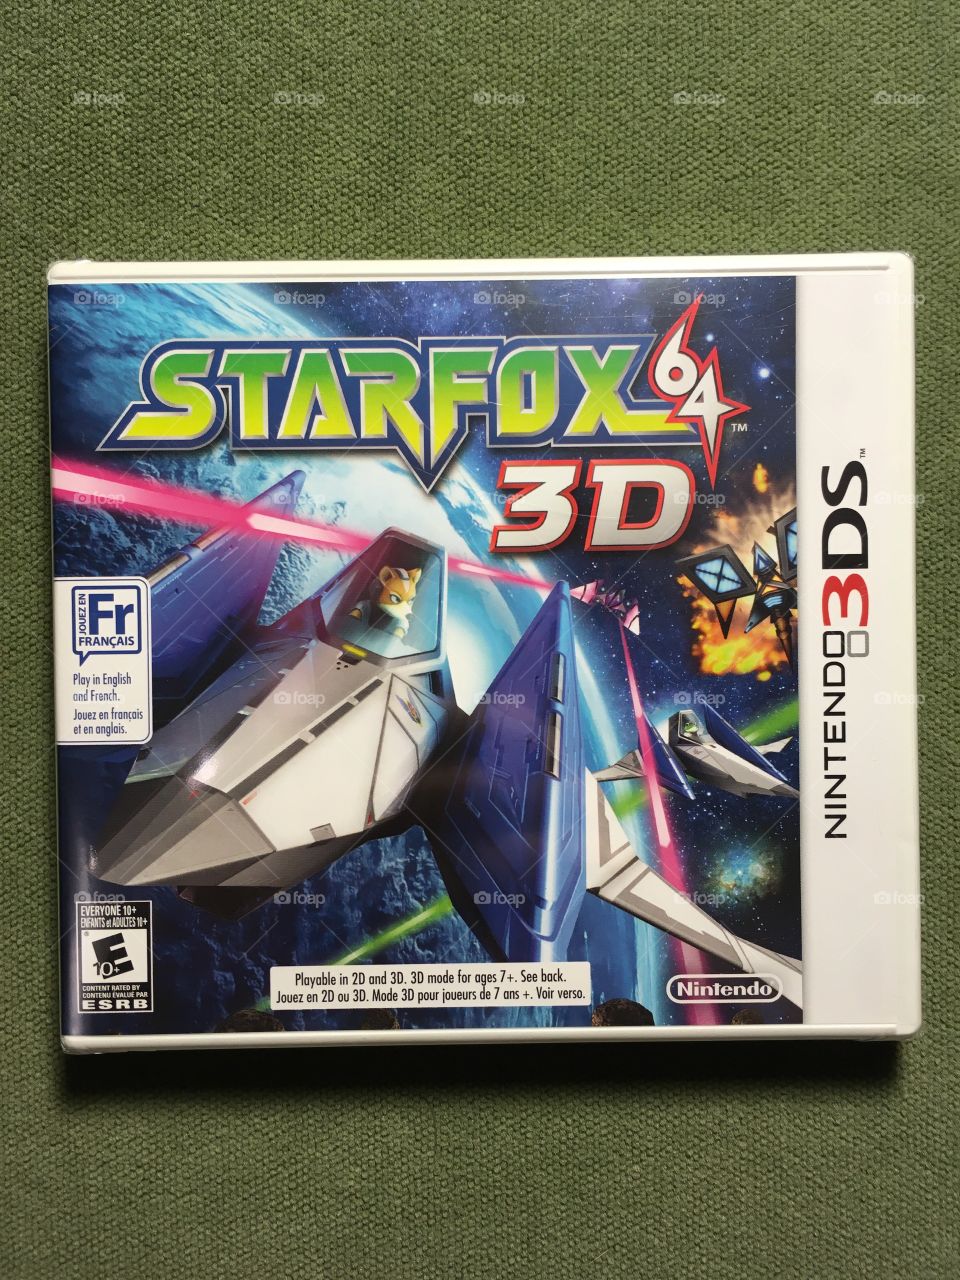 Starfox 64 3D for Nintendo 3DS
Brand New Sealed
Released 2011